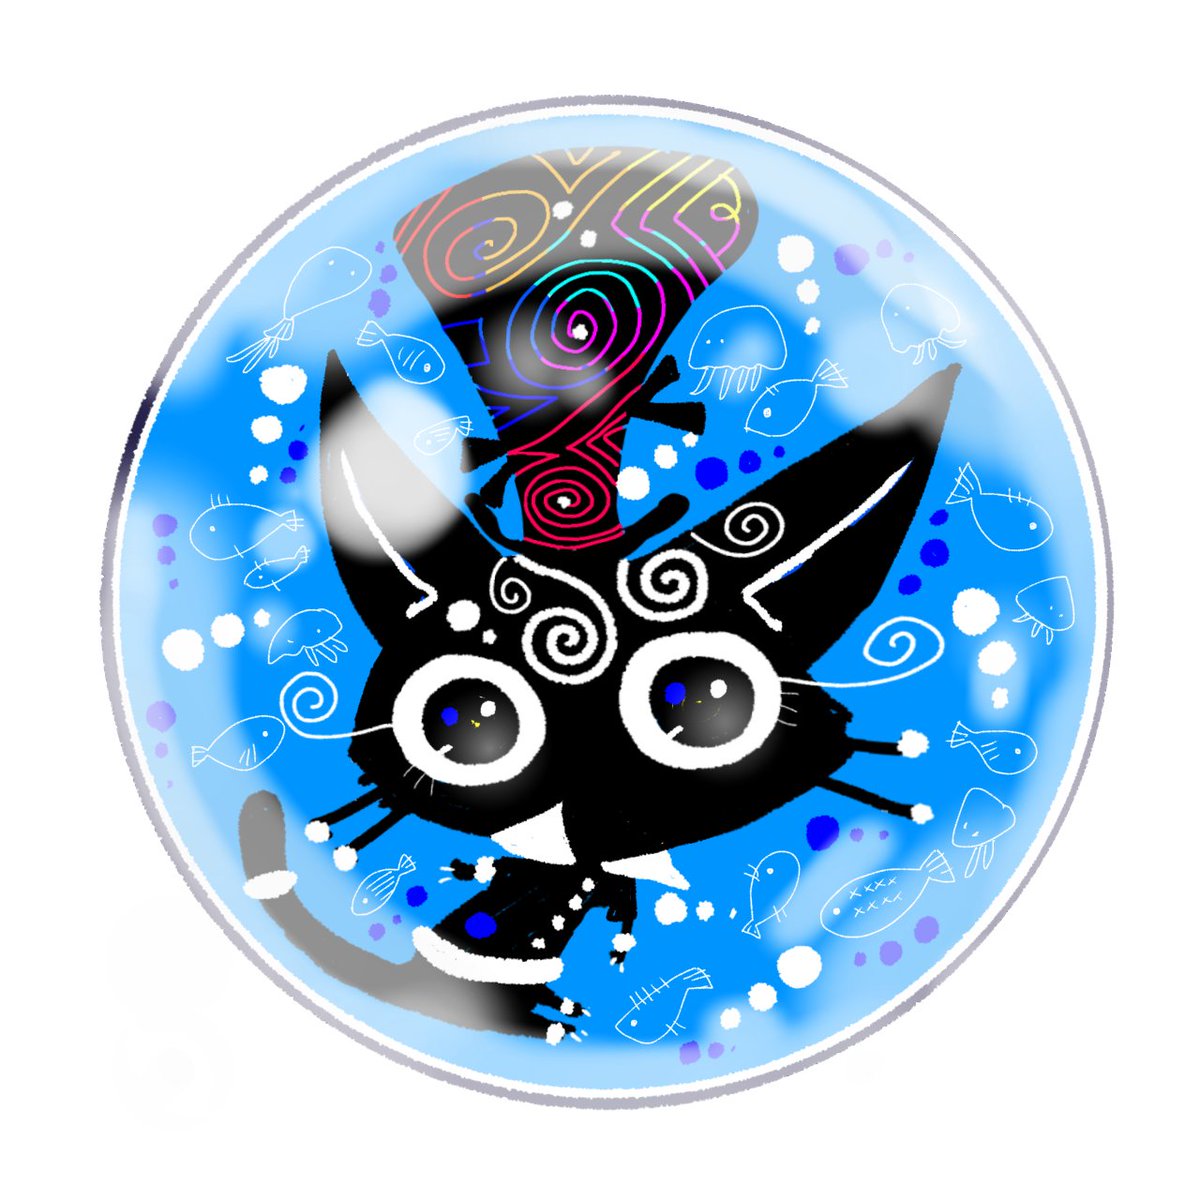 「雨粒」|ほんだ猫 (不思議風景と猫を描くぶるべり)のイラスト